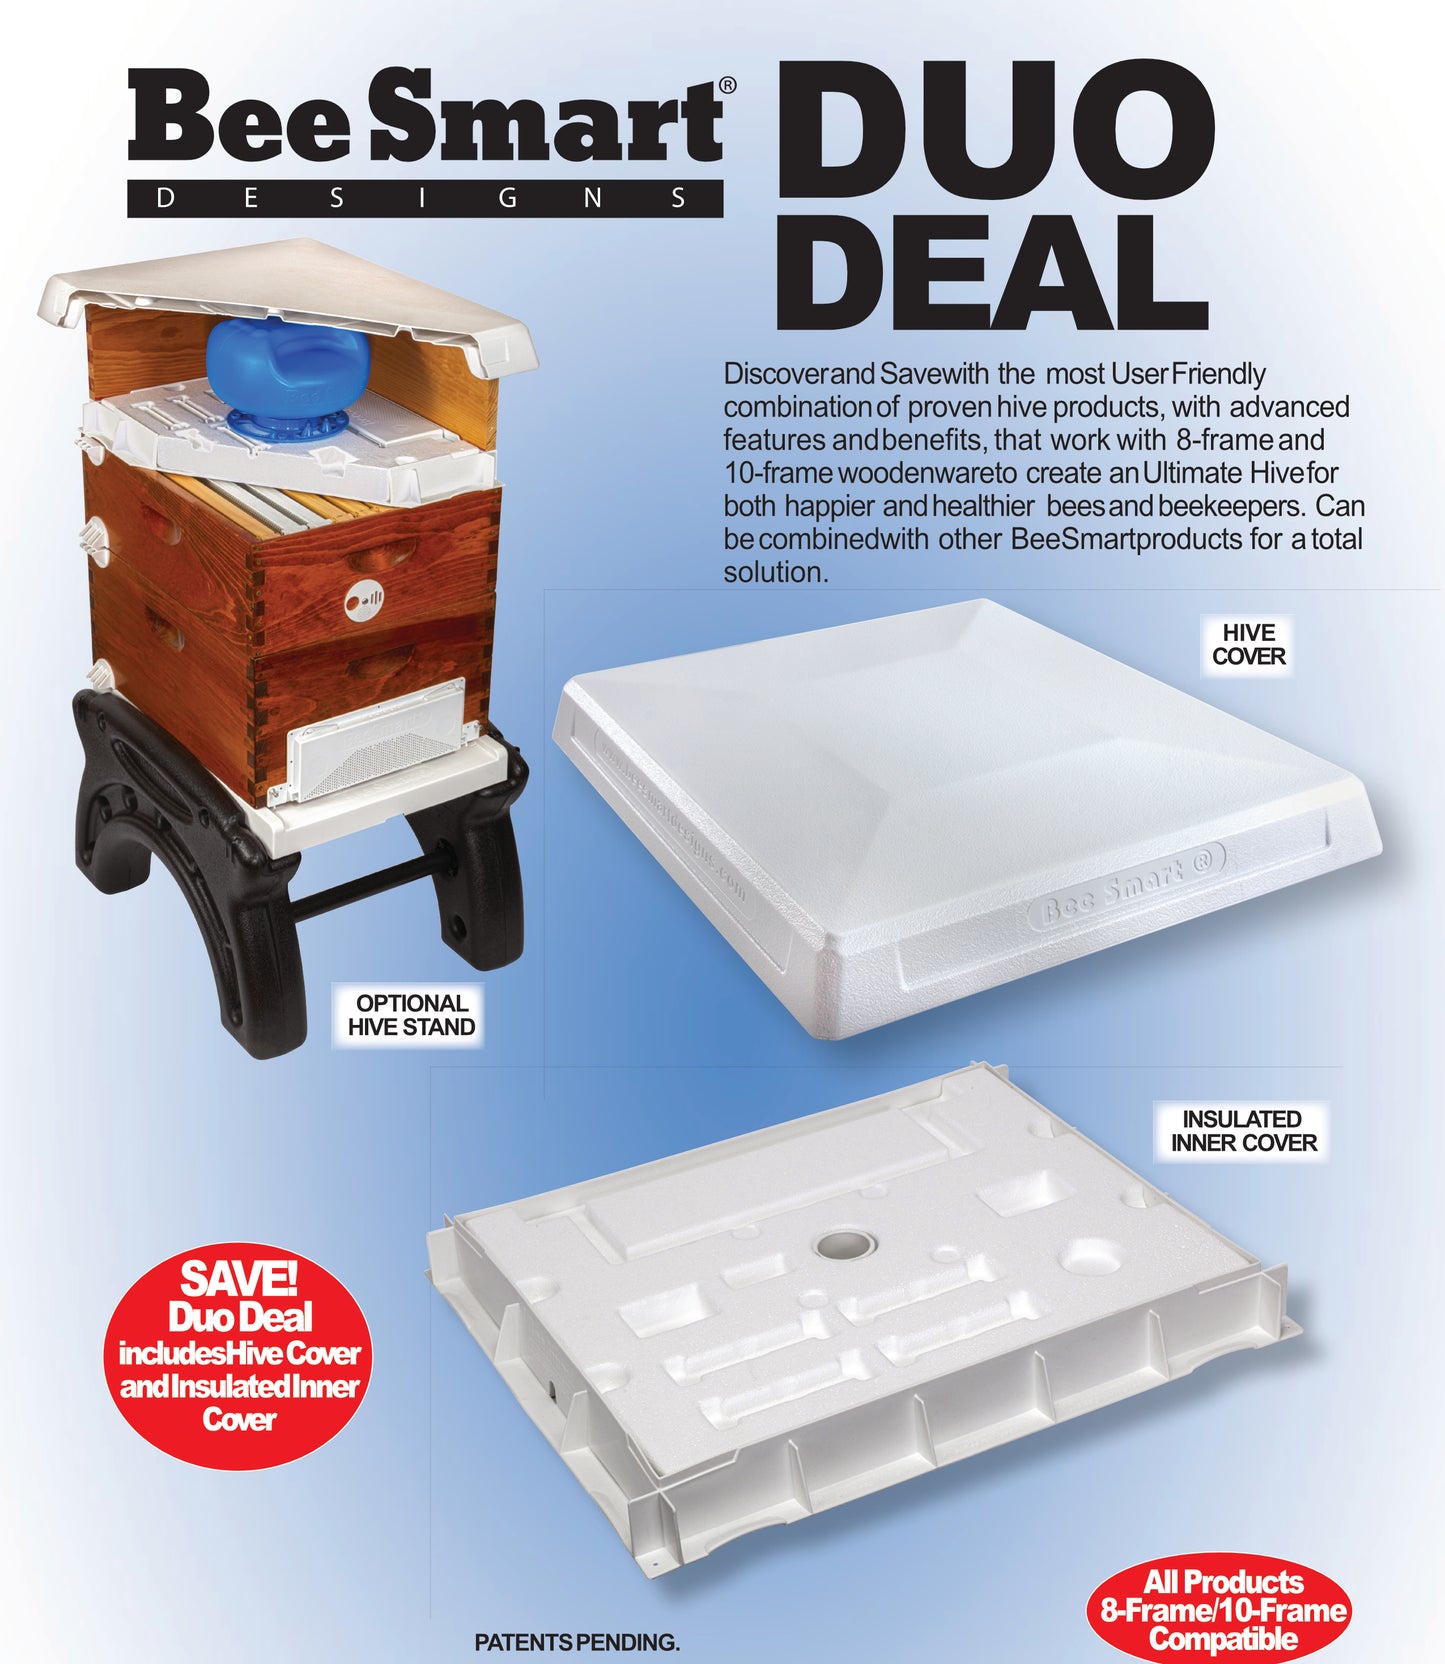 Bee Smart Ultimate Duo Deal